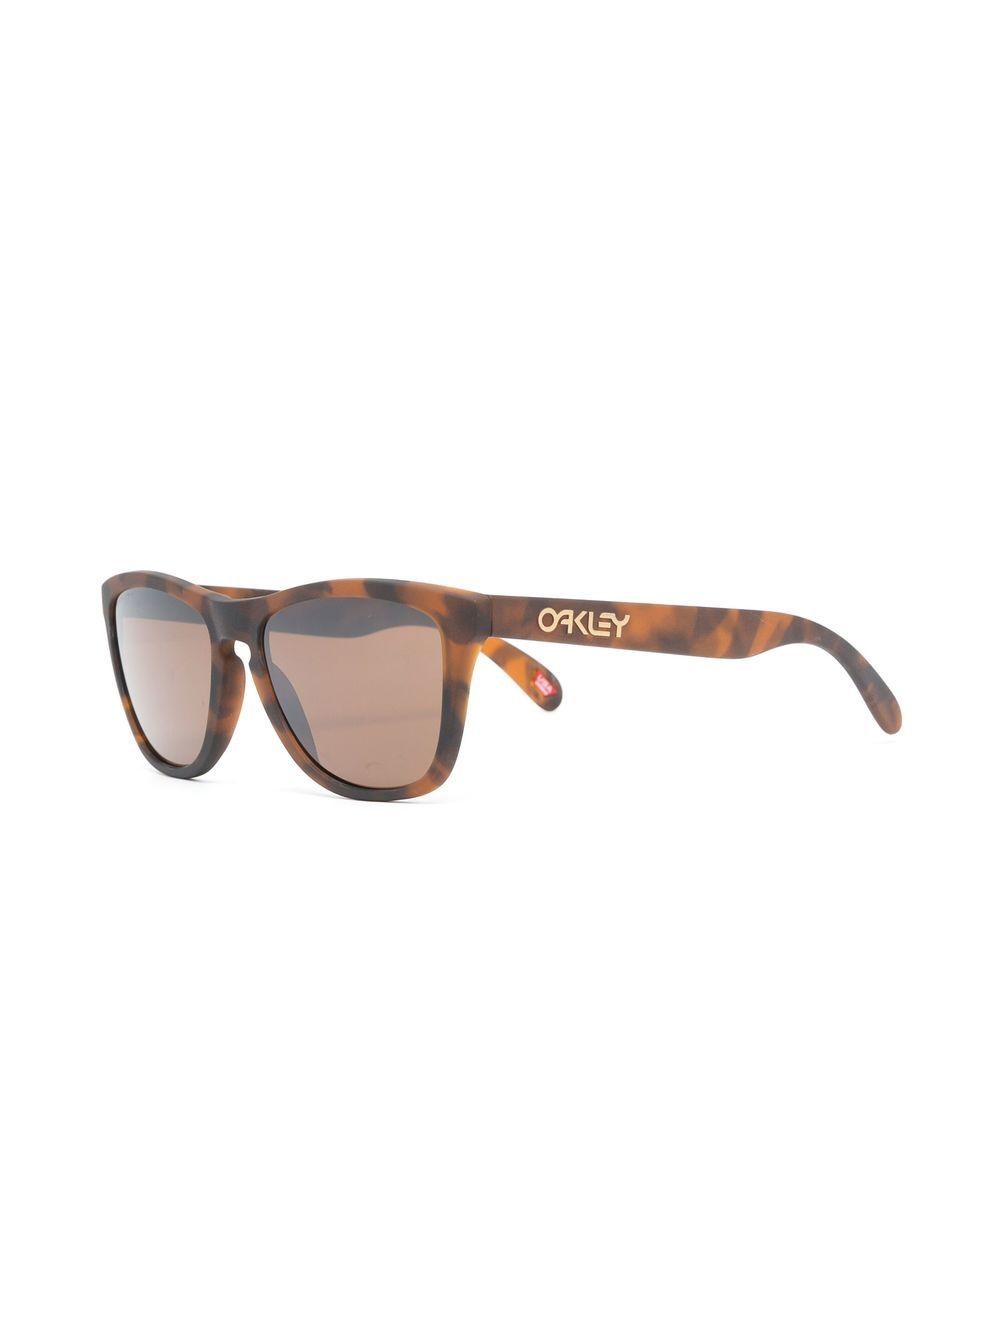 Tortoiseshell square-frame sunglasses